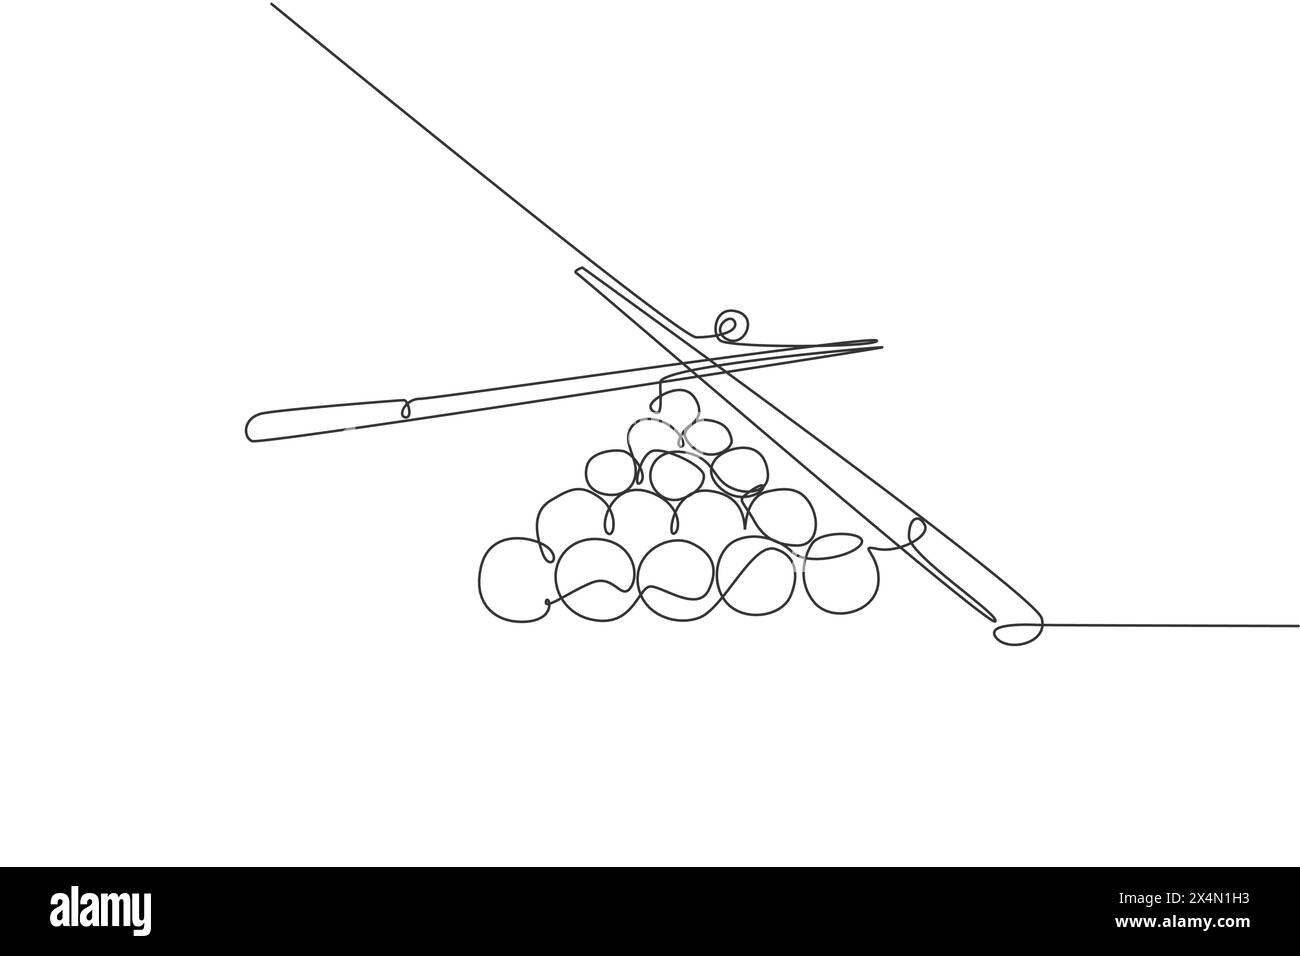 Un dessin simple ligne de la pile de boules pyramidales triangulaires pour le jeu de billard à la salle de billard illustration graphique vectorielle. Sports d'intérieur récréationa Illustration de Vecteur